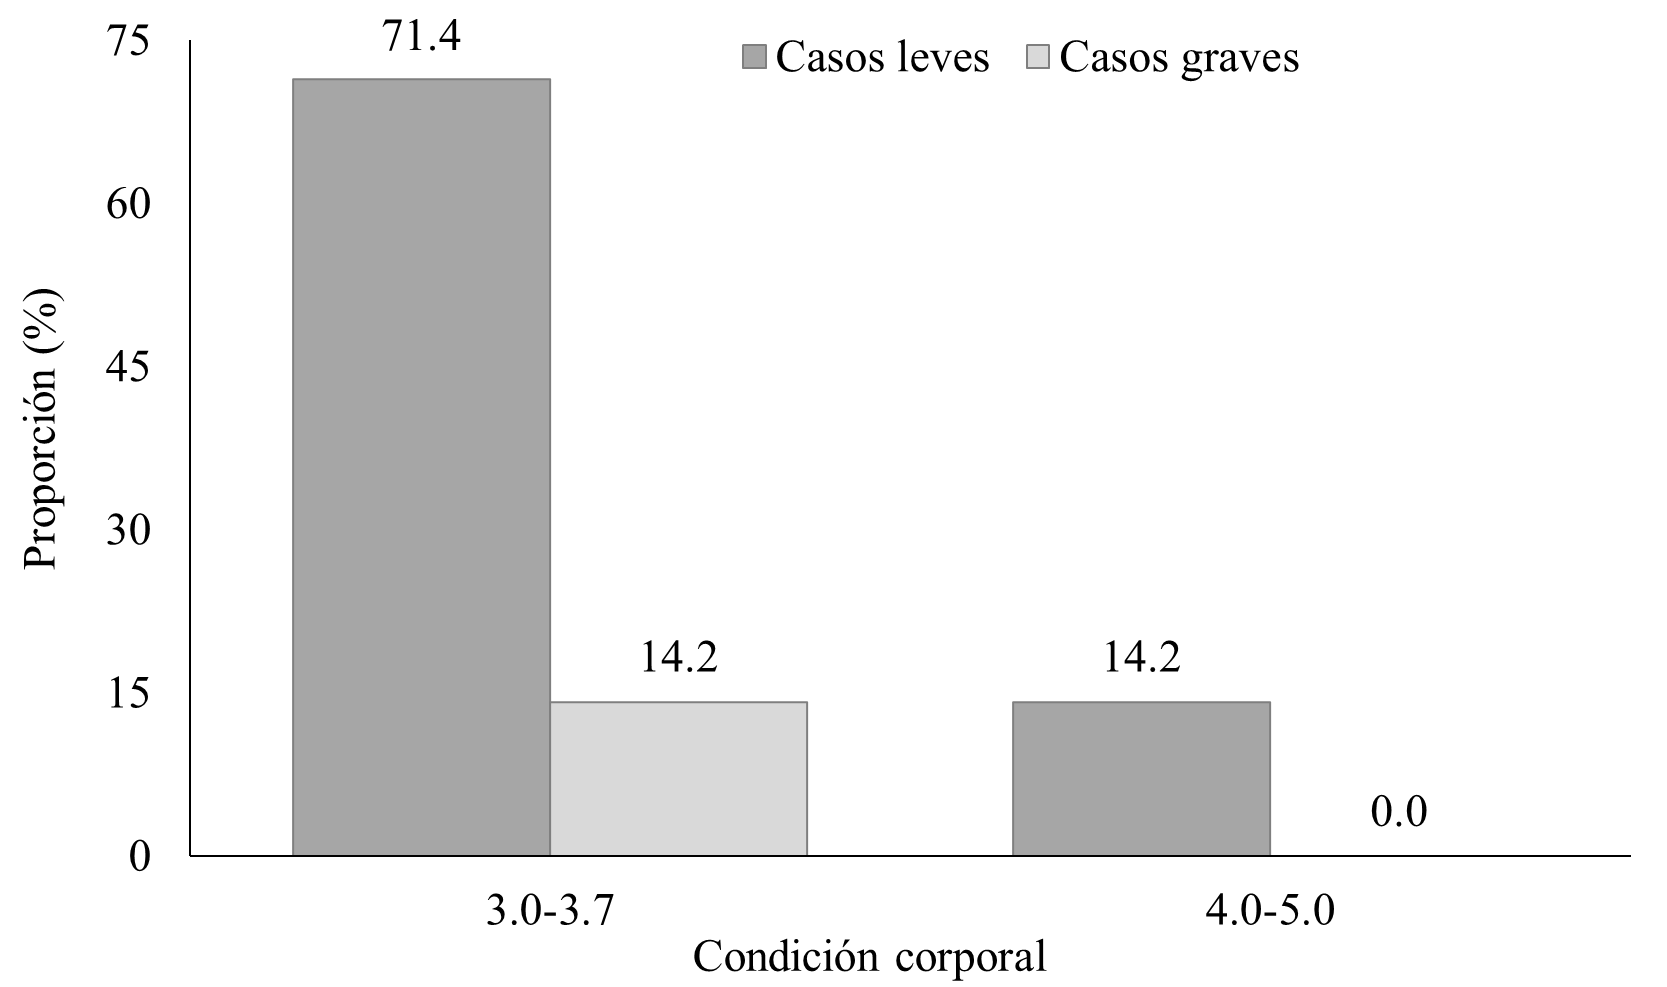 Proporción de casos leves y graves de cetosis
subclínica según condición corporal de las vacas.